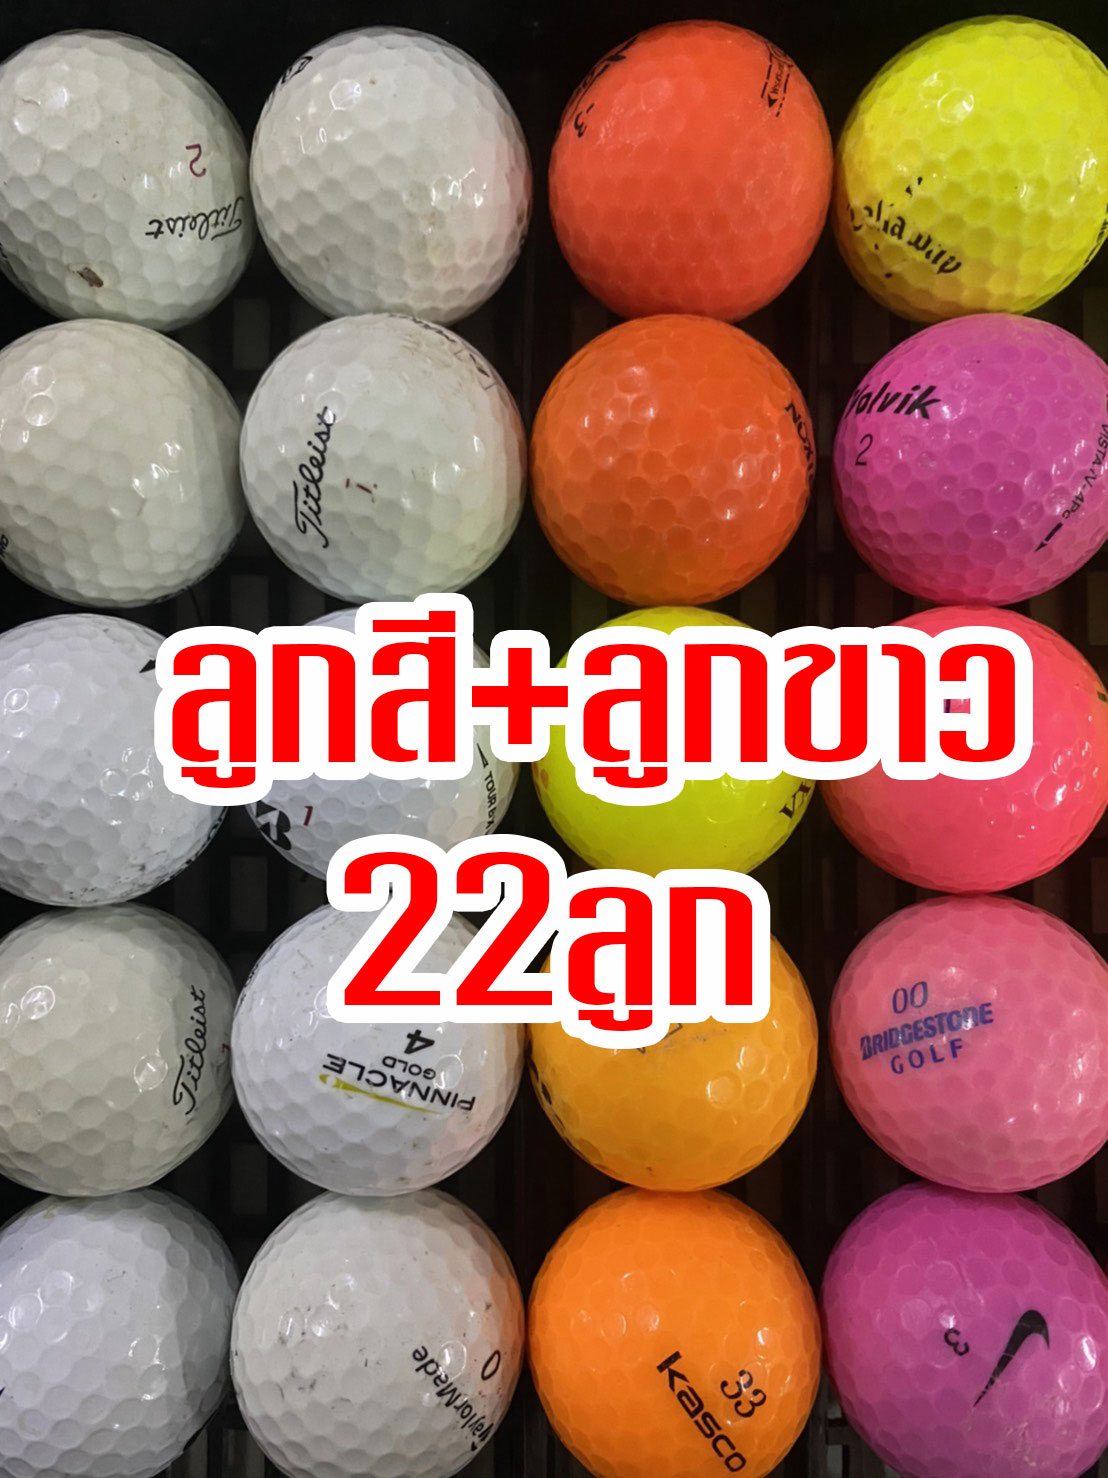 ลูกกอล์ฟ golf ball 22 ลูก 219 บาท ลูกสี ลูกขาว ทั้งสีทั้งขาว 22 ball 219 bath fast chip